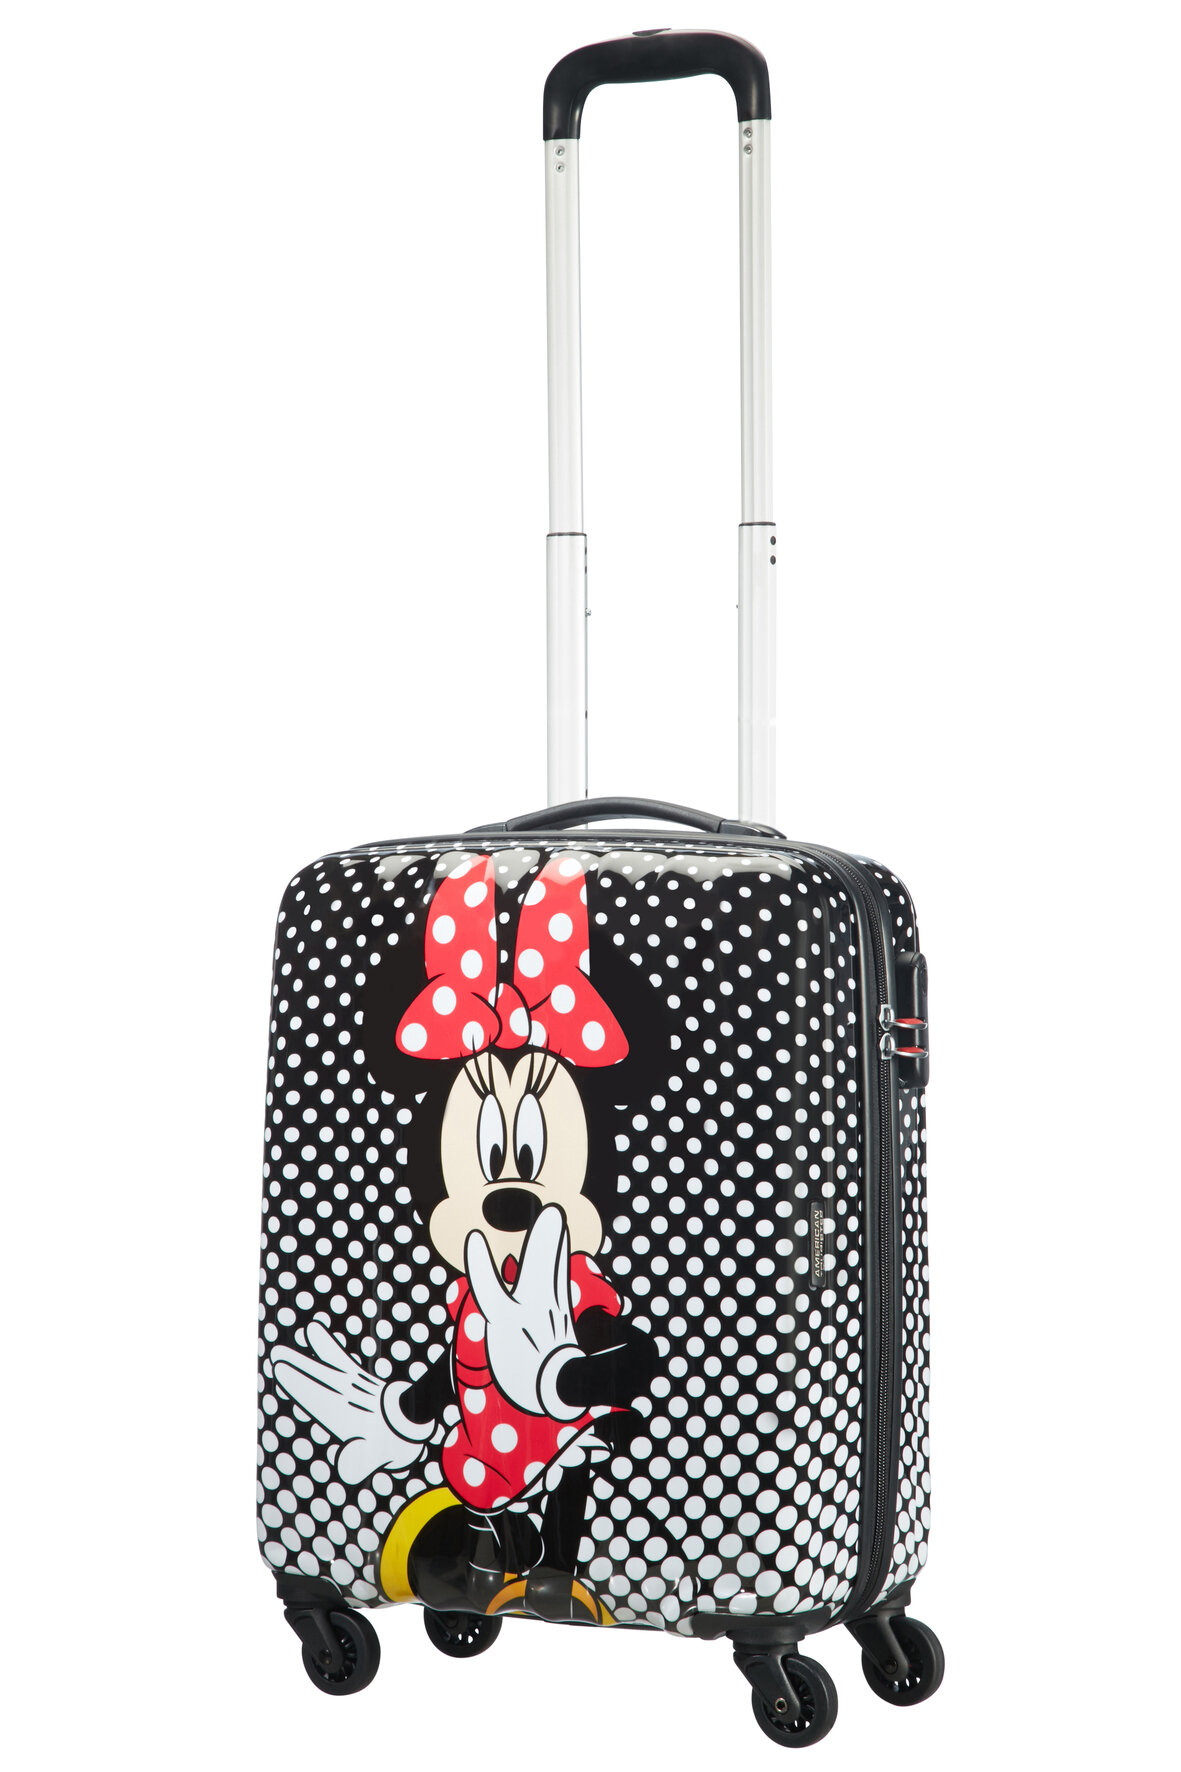 Walizka American Tourister Minie Mouse Disney Legends spin.55/20 widok na walizkę pod skosem